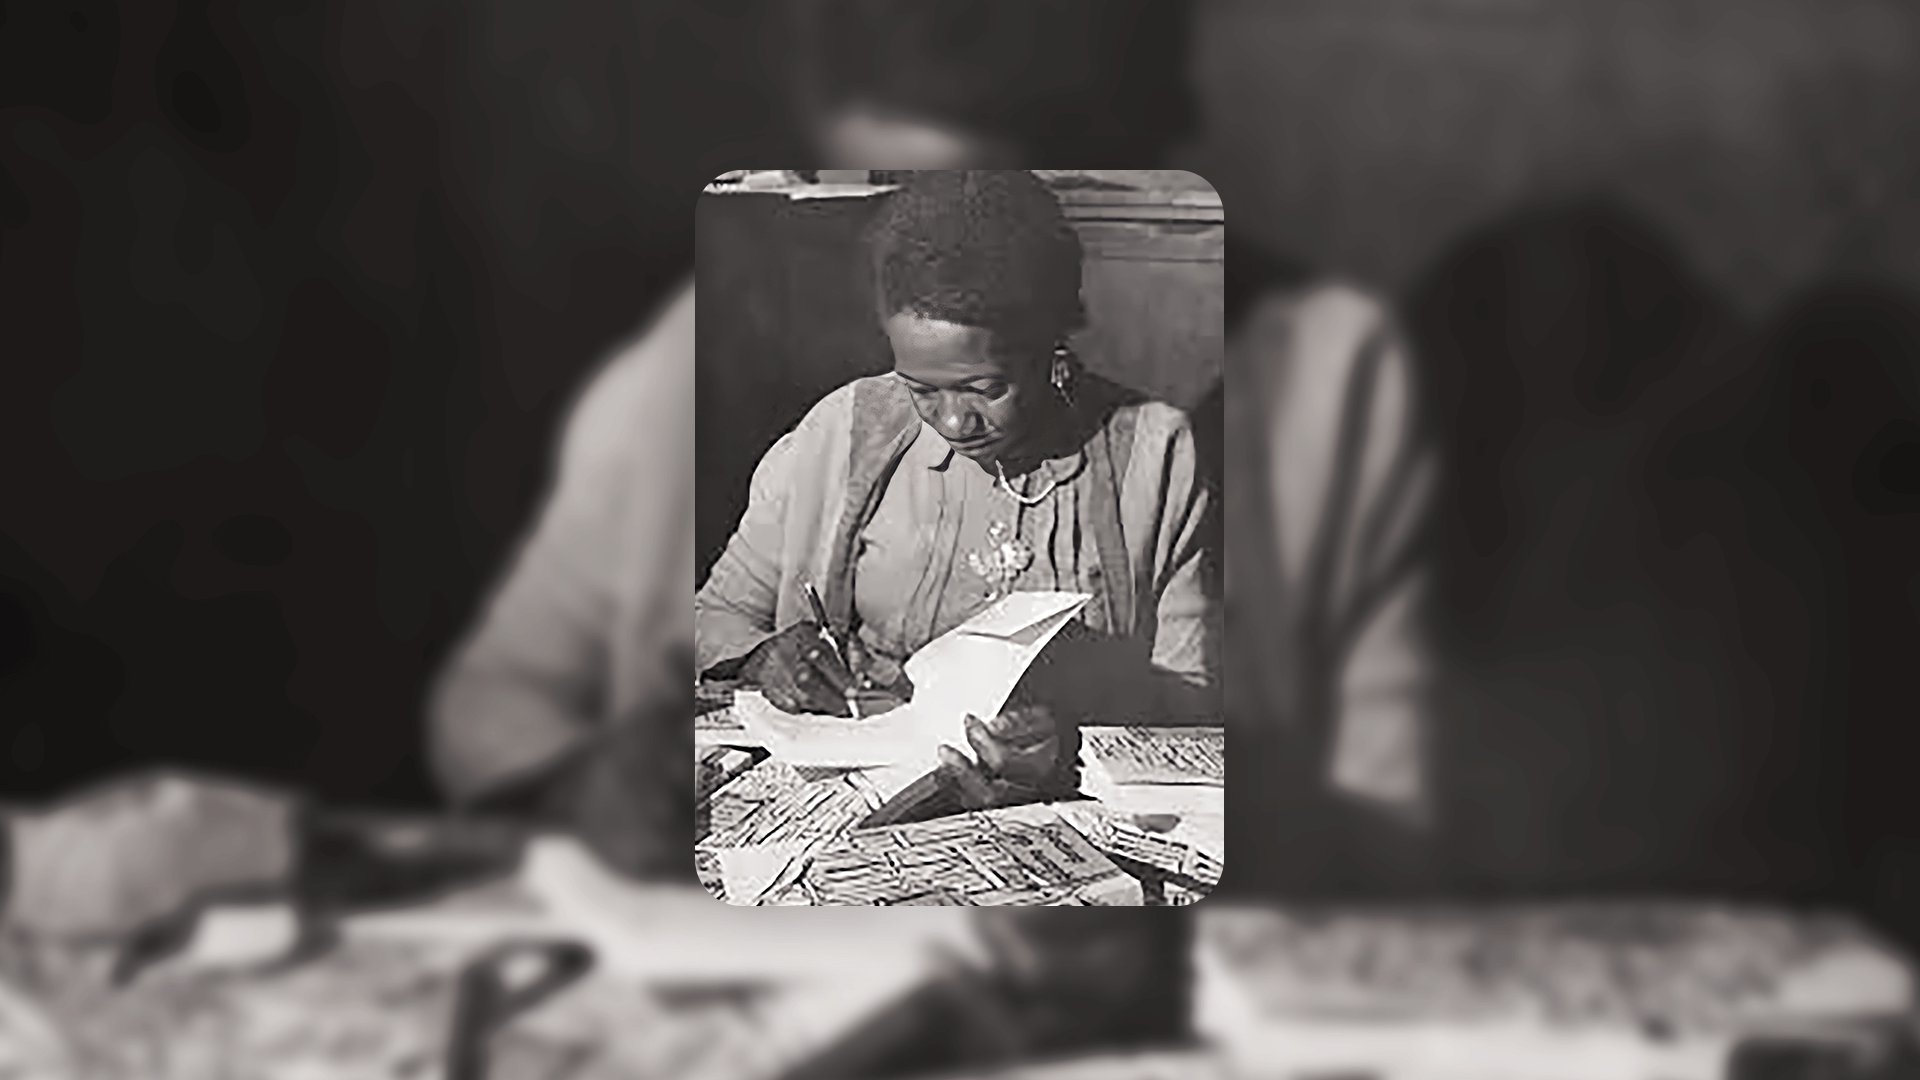 Fotografia de Carolina de Maria de Jesus escrevendo. Ela foi uma das autoras negras do Brasil.